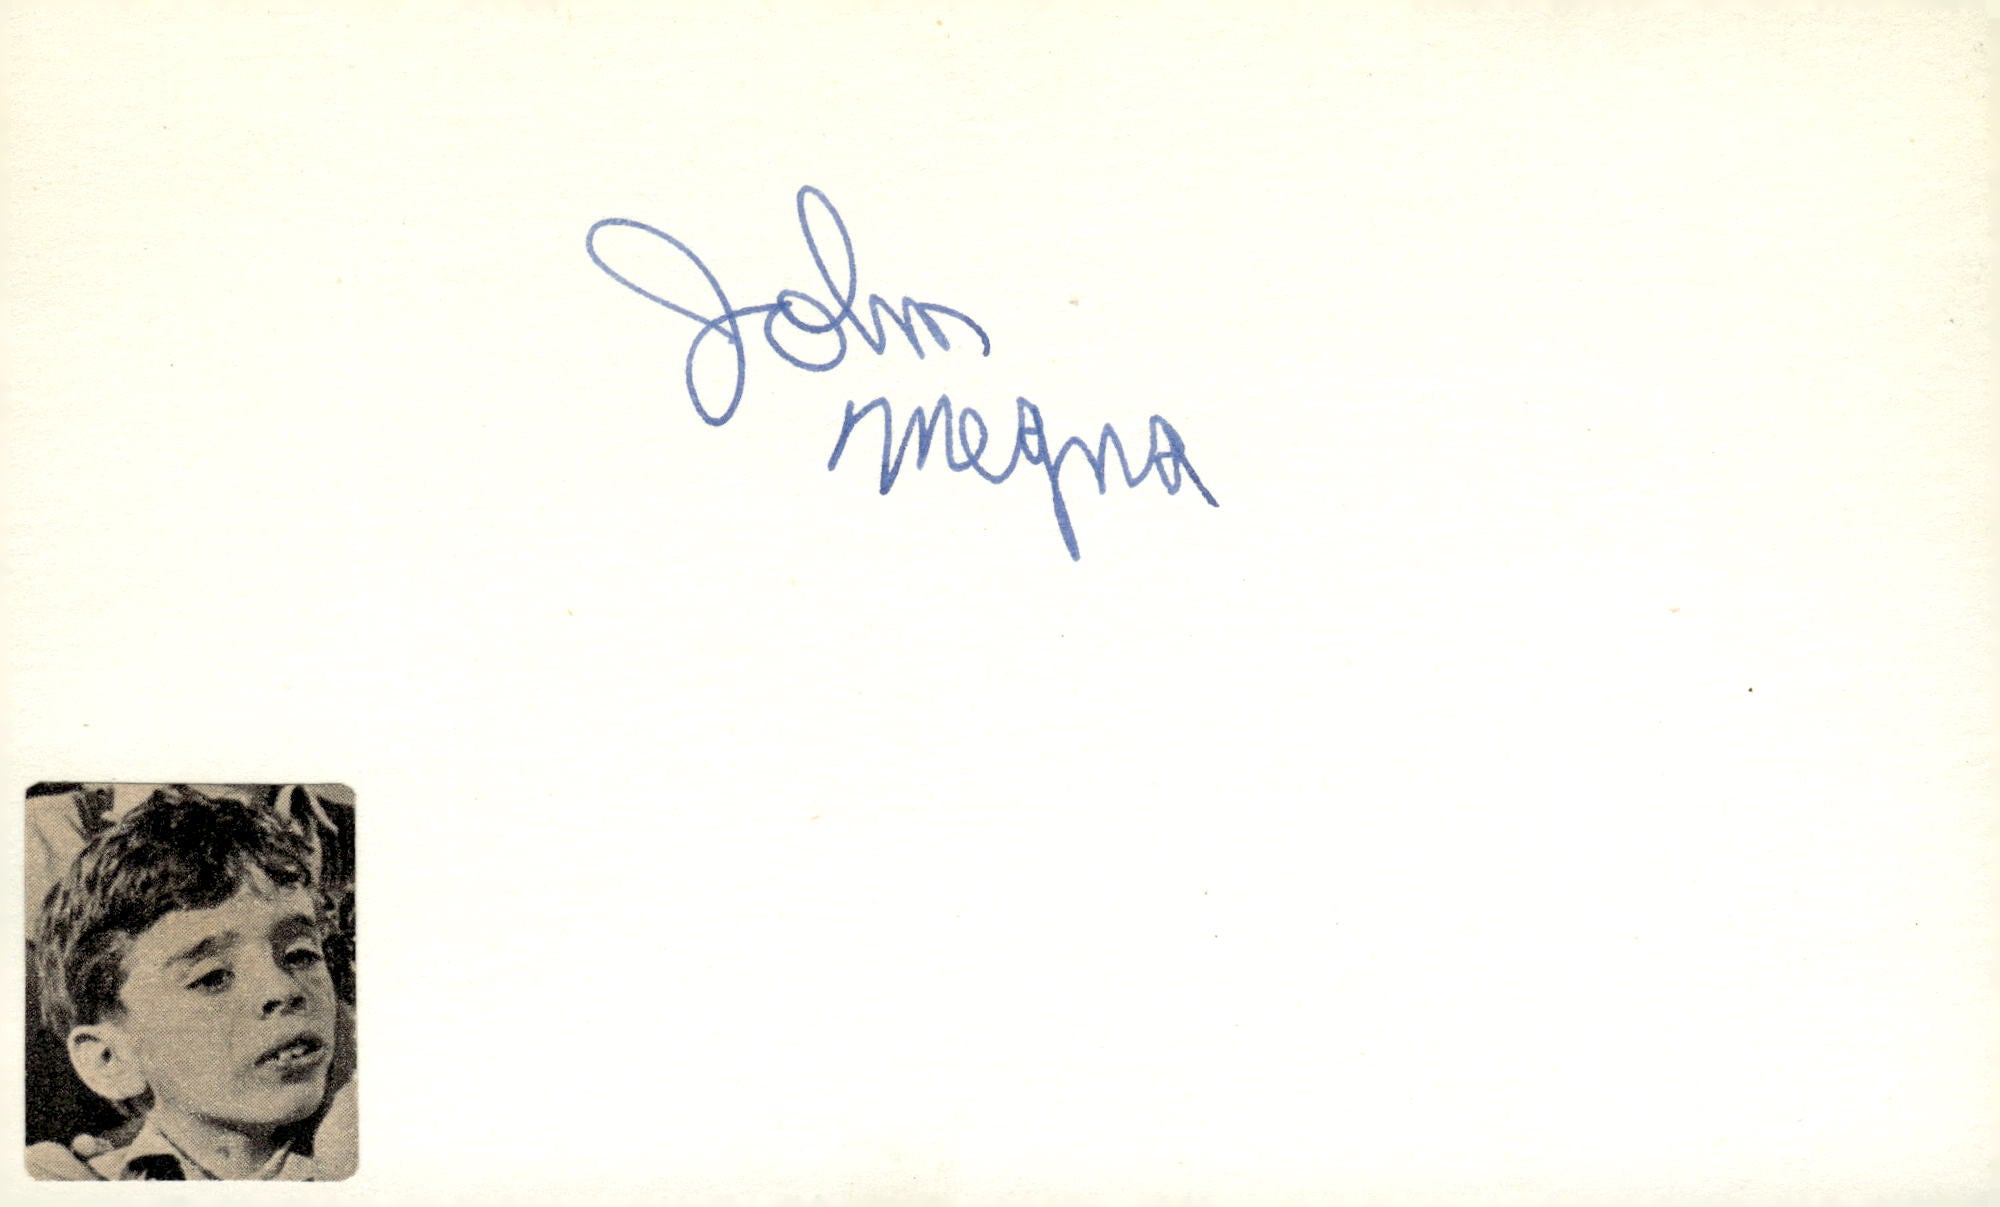 John Megna Signed Auto 3x5 Index Card To Kill a Mockingbird